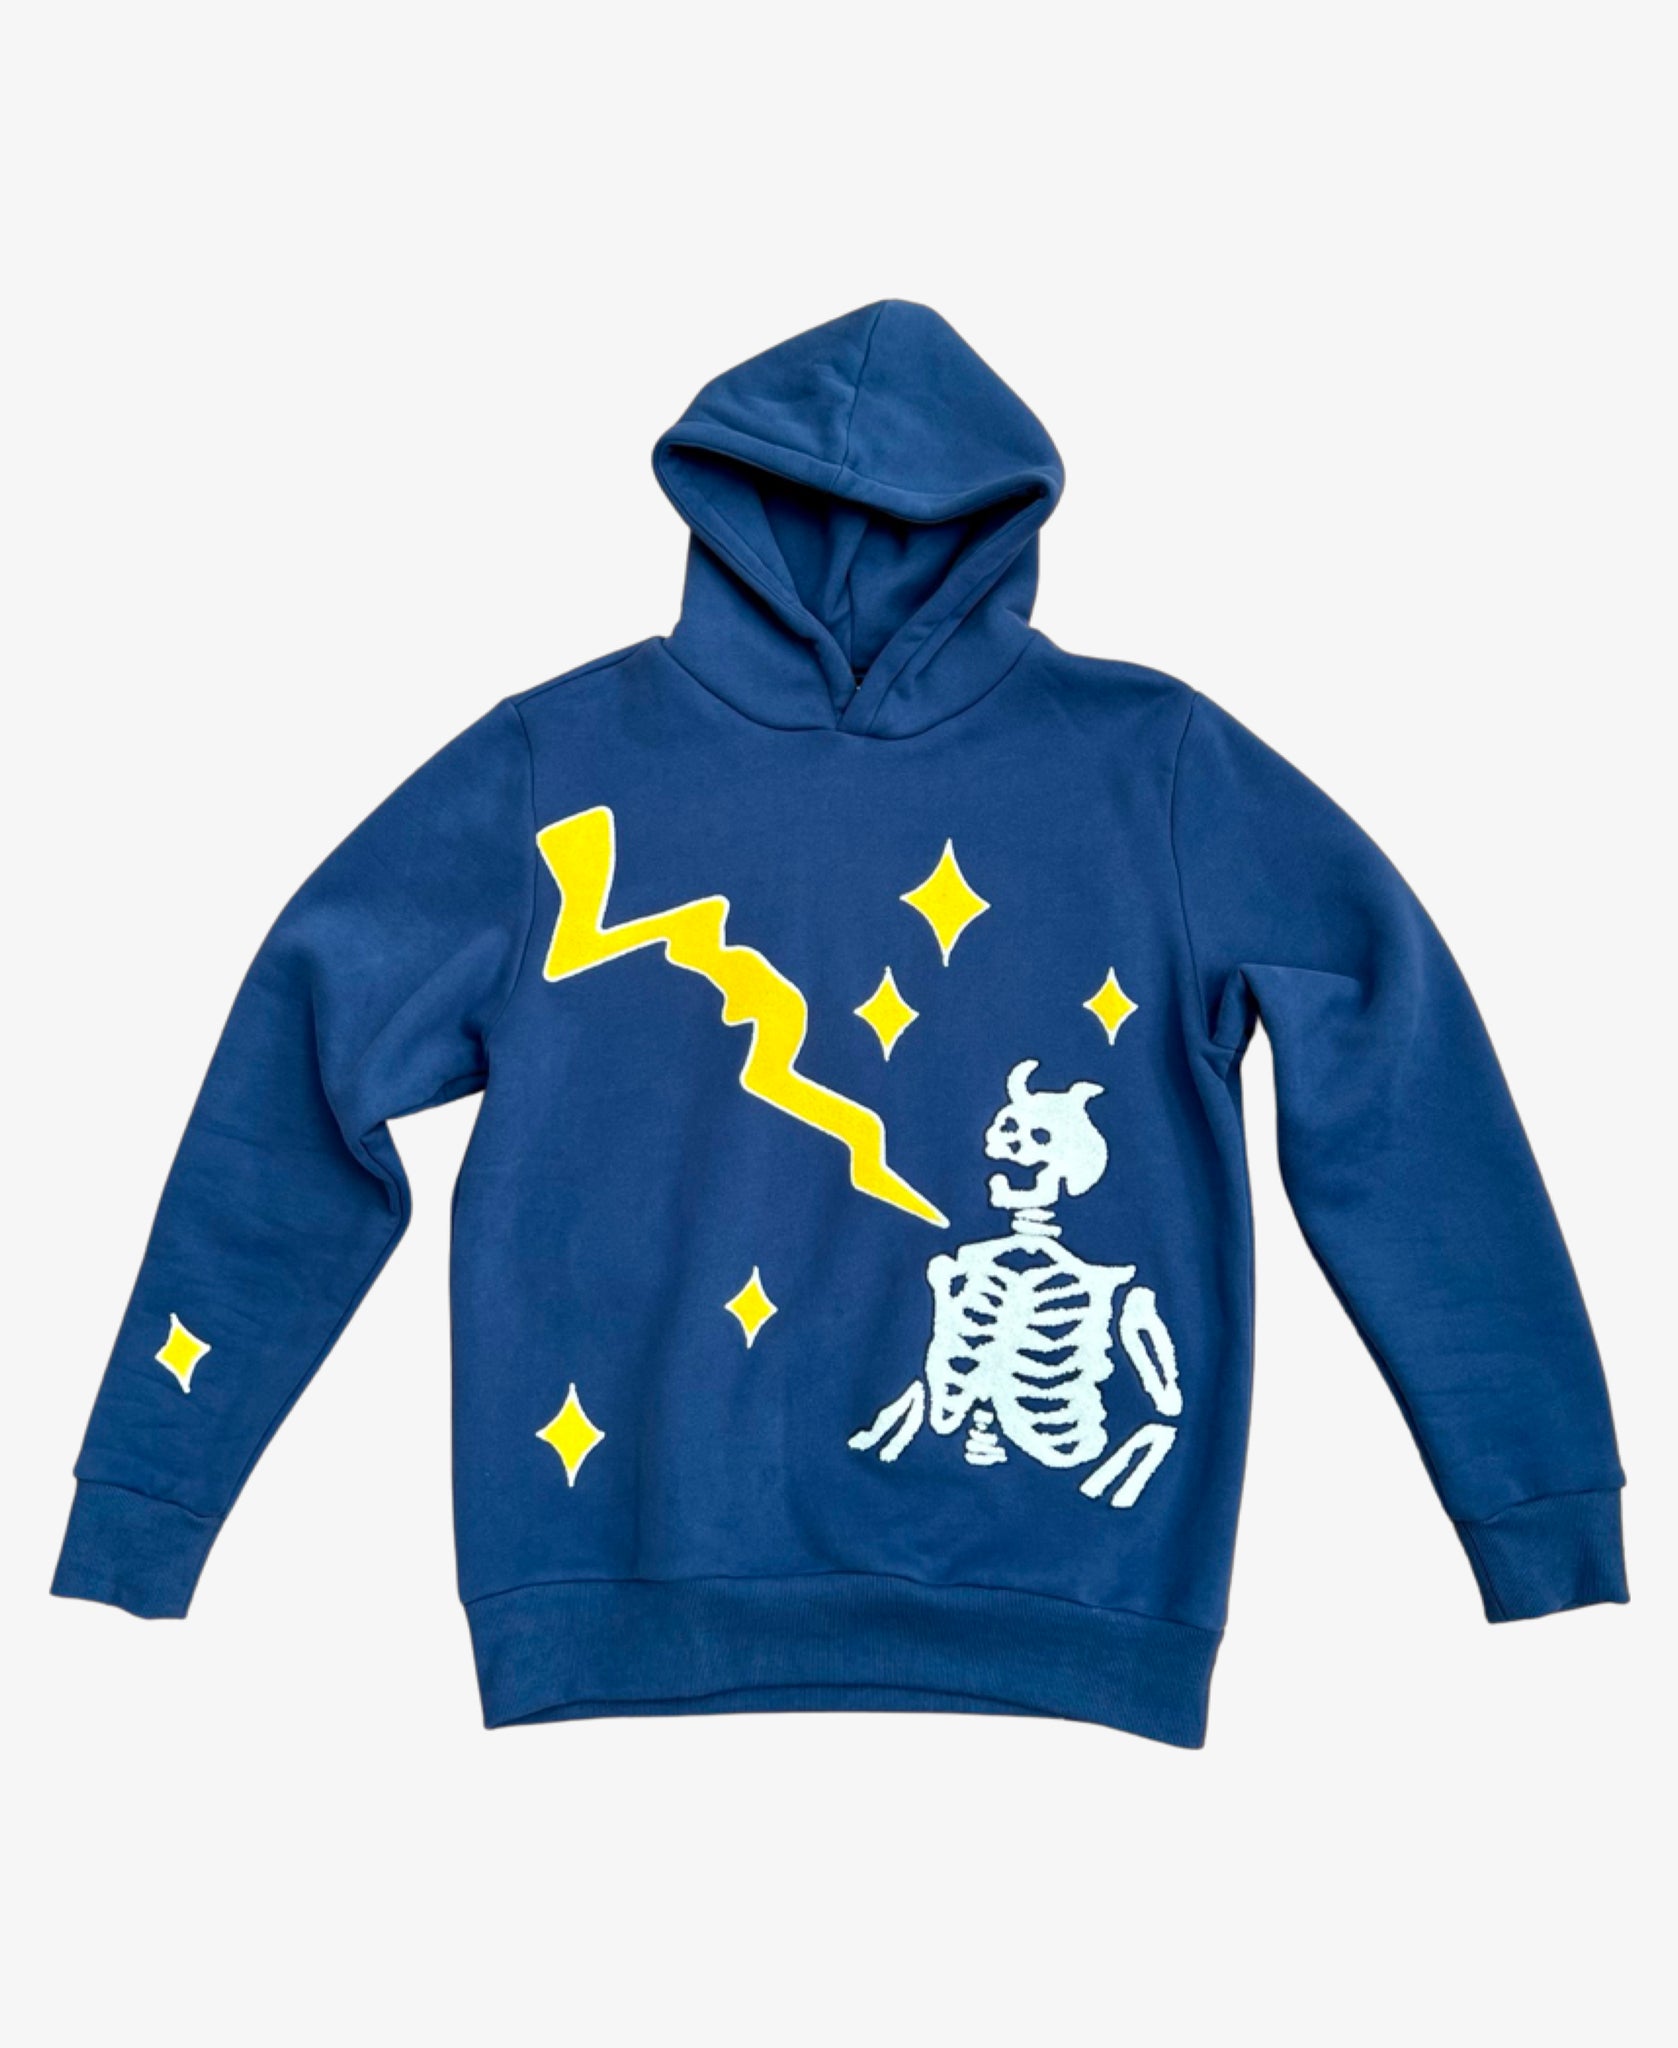 Thunderstruck - Blue Skeleton Lightning Hoodie